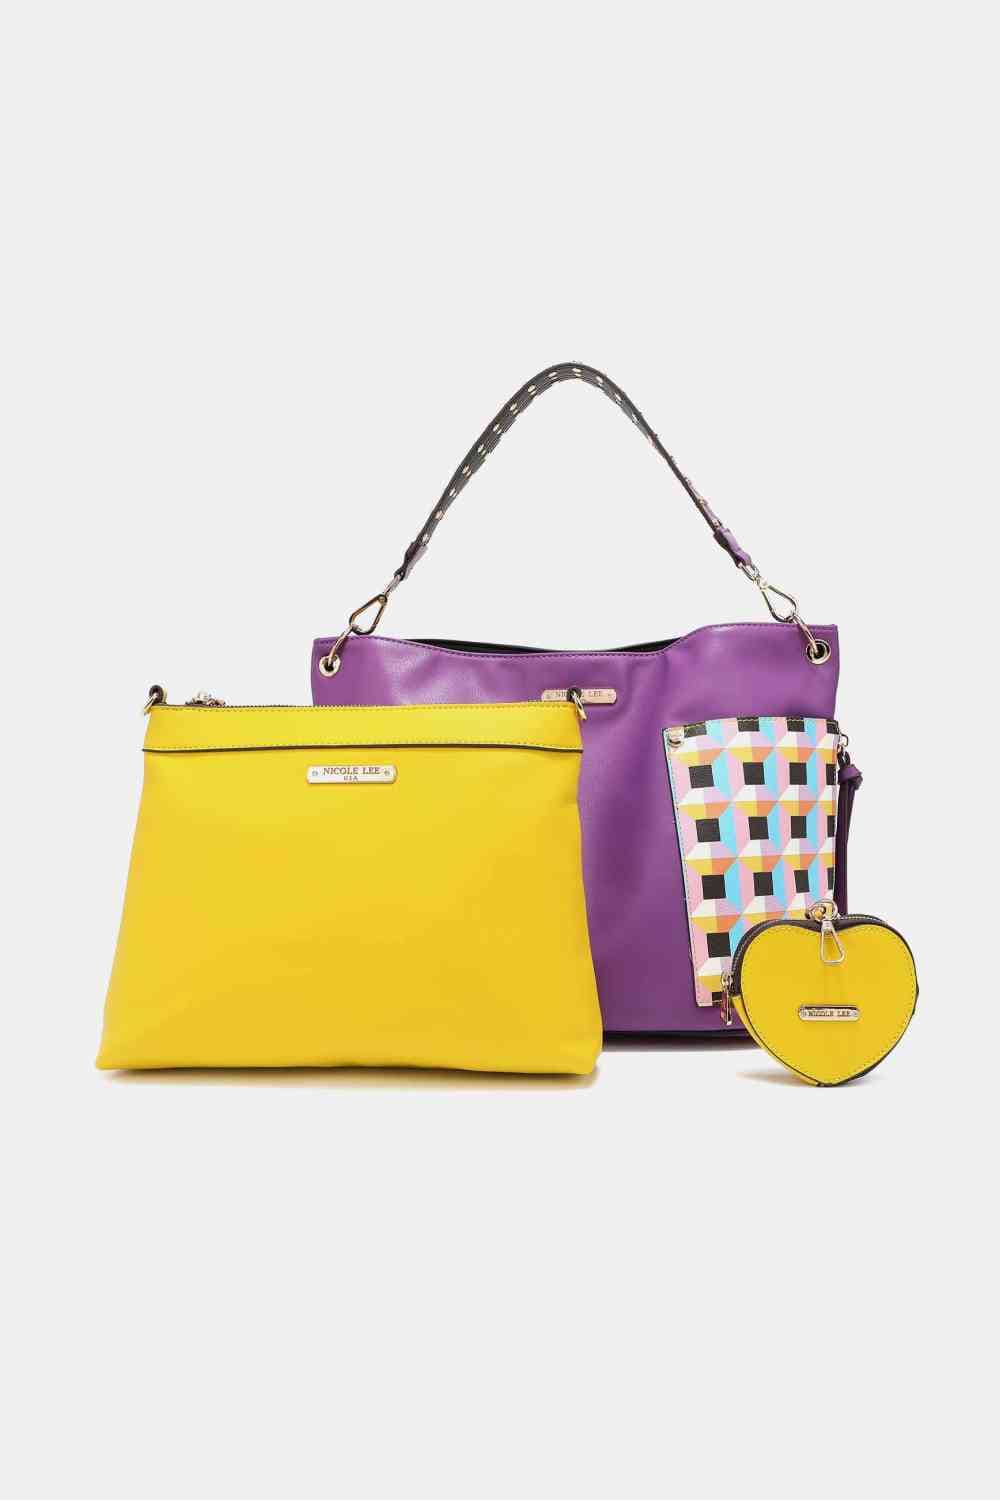 The802Gypsy Handbags, Wallets & Cases Purple / One Size GYPSY-Nicole Lee USA-3-Piece Handbag Set